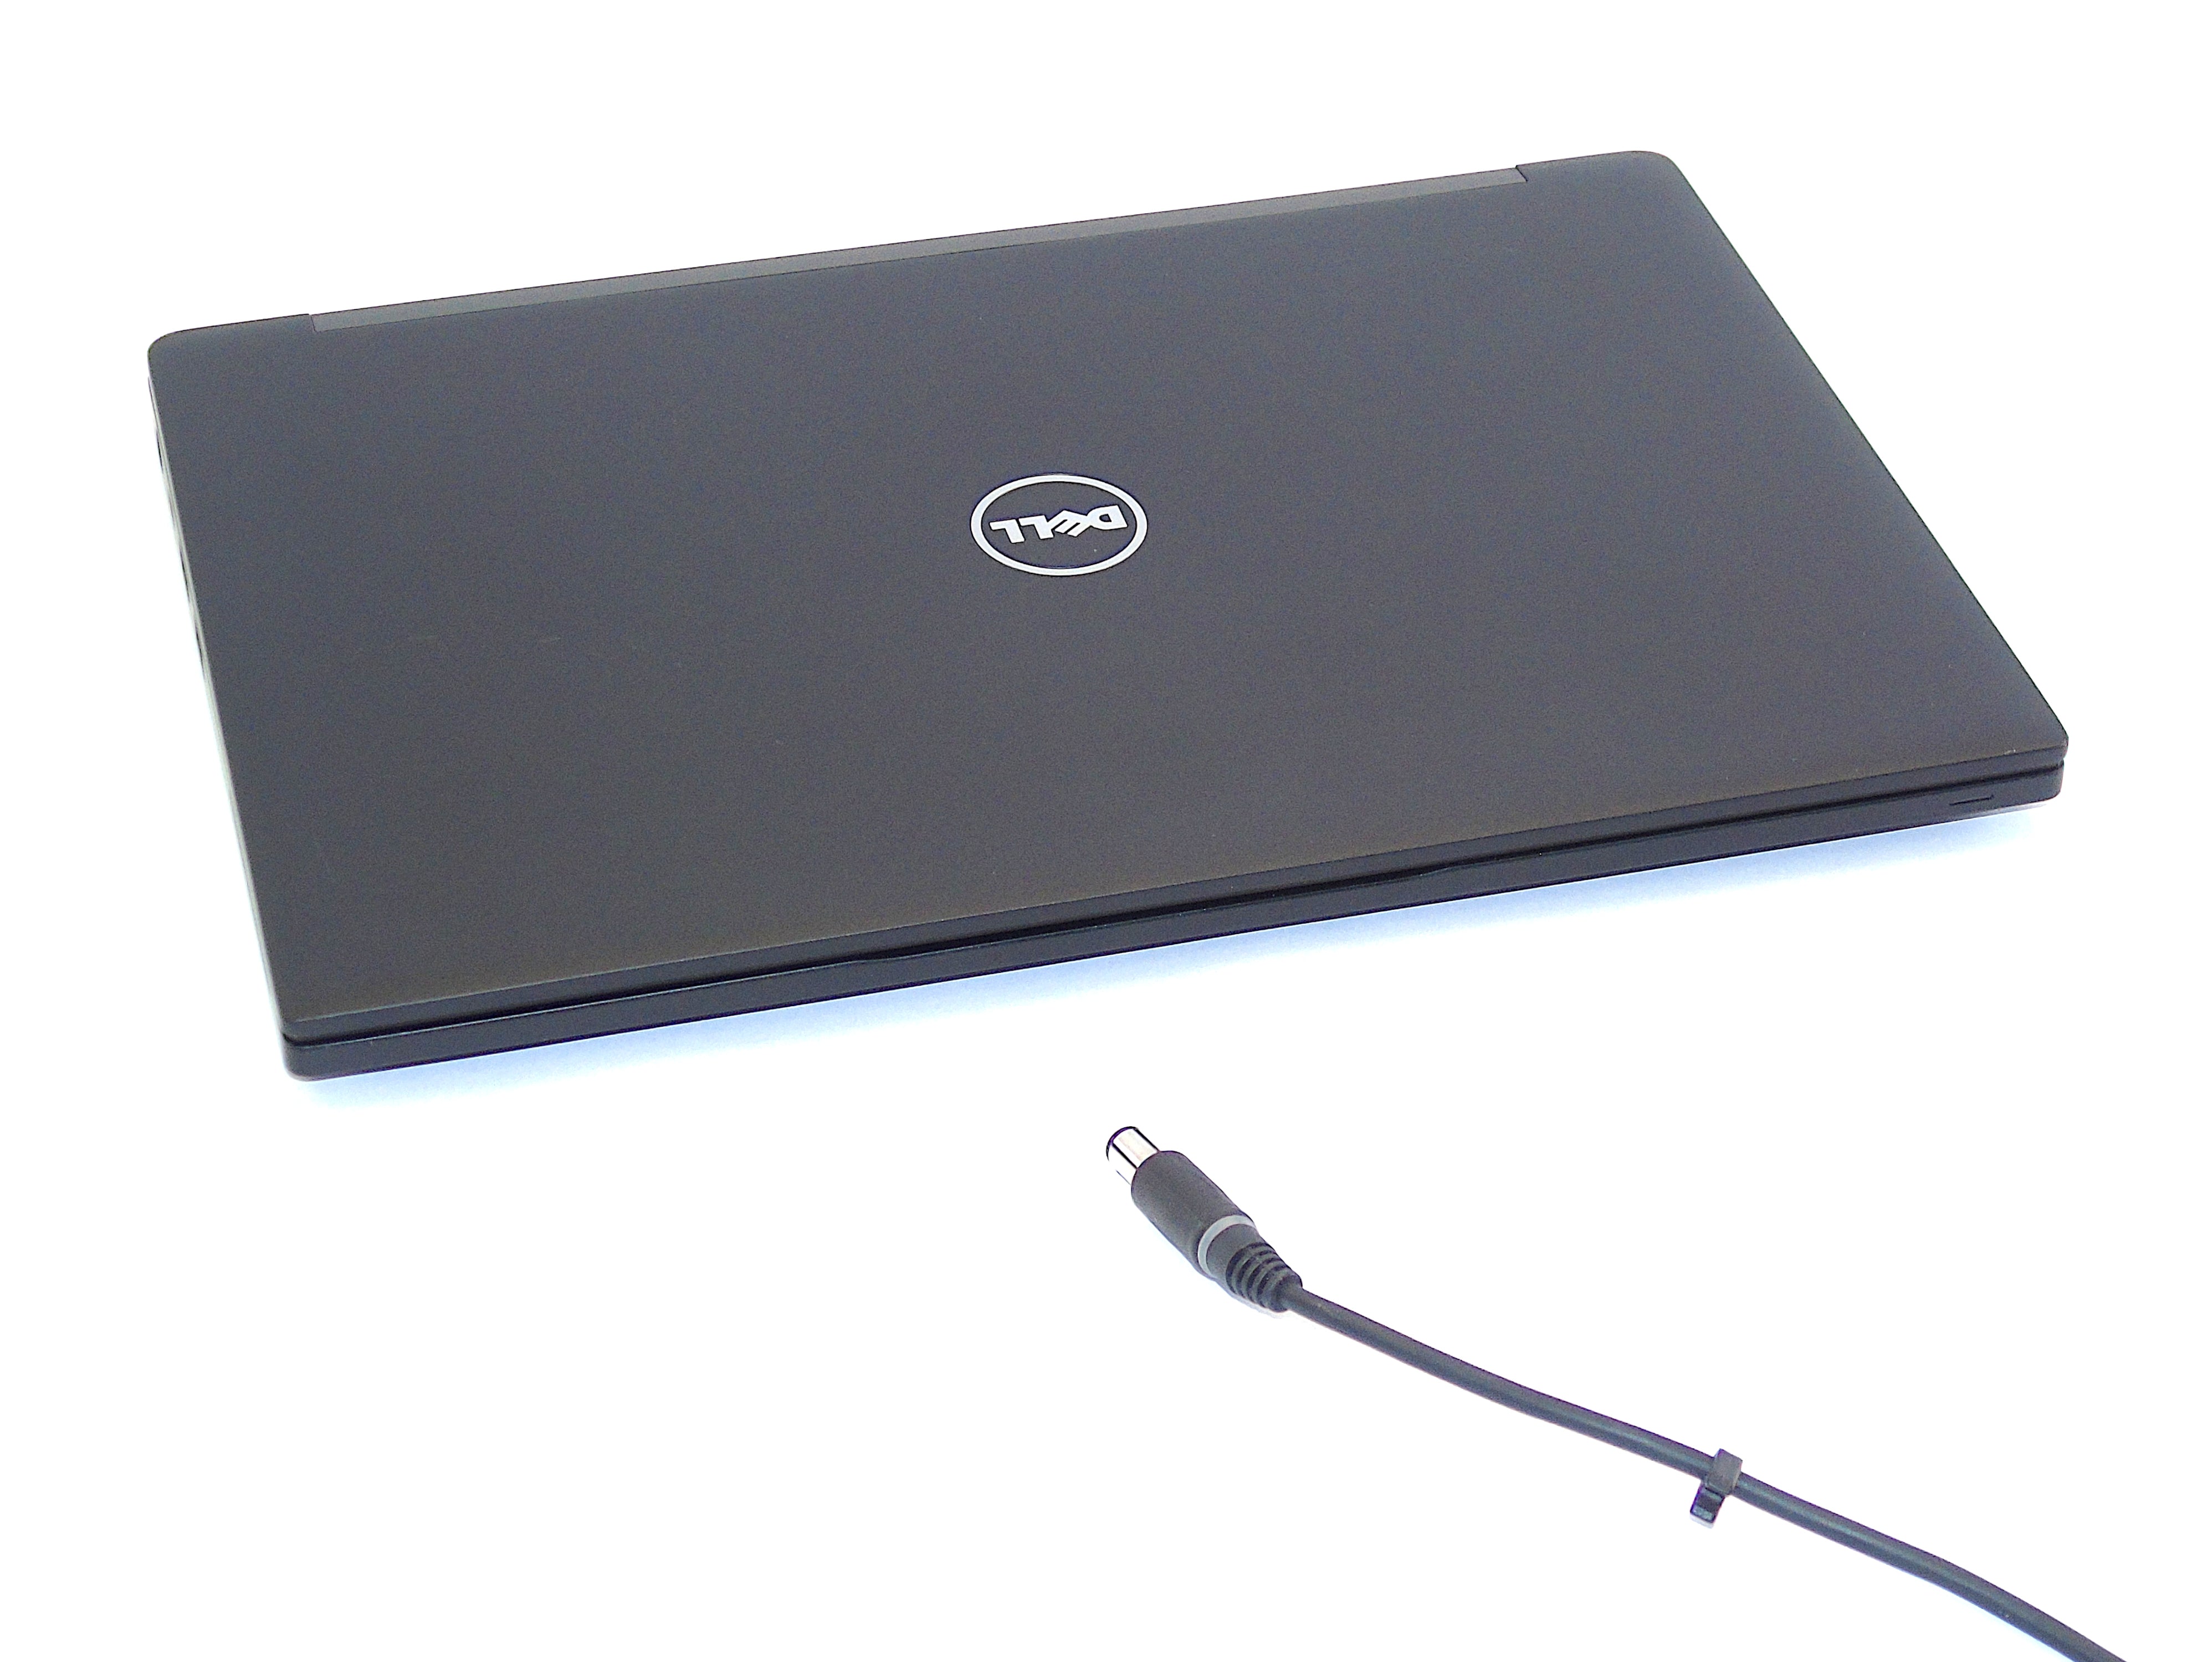 Dell Latitude 7280 Laptop, 12.8" Core i5 6th Gen, 8GB RAM, 256GB SSD